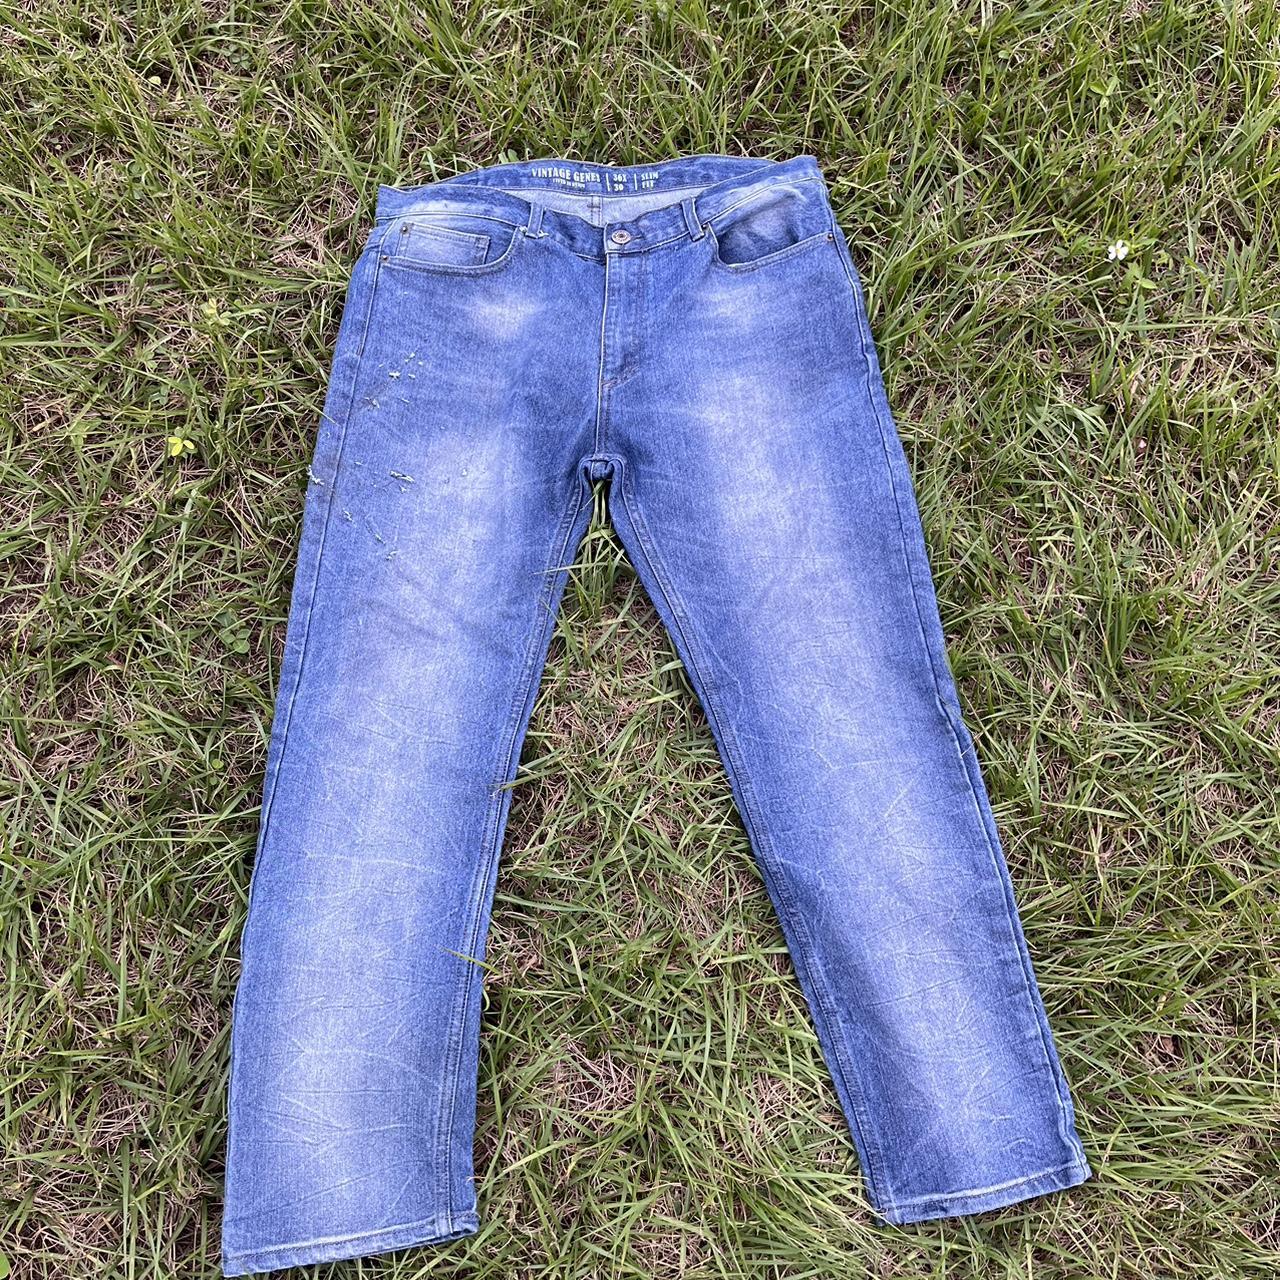 Vintage Genes Jeans Slim fit 36x30 #vintage... - Depop